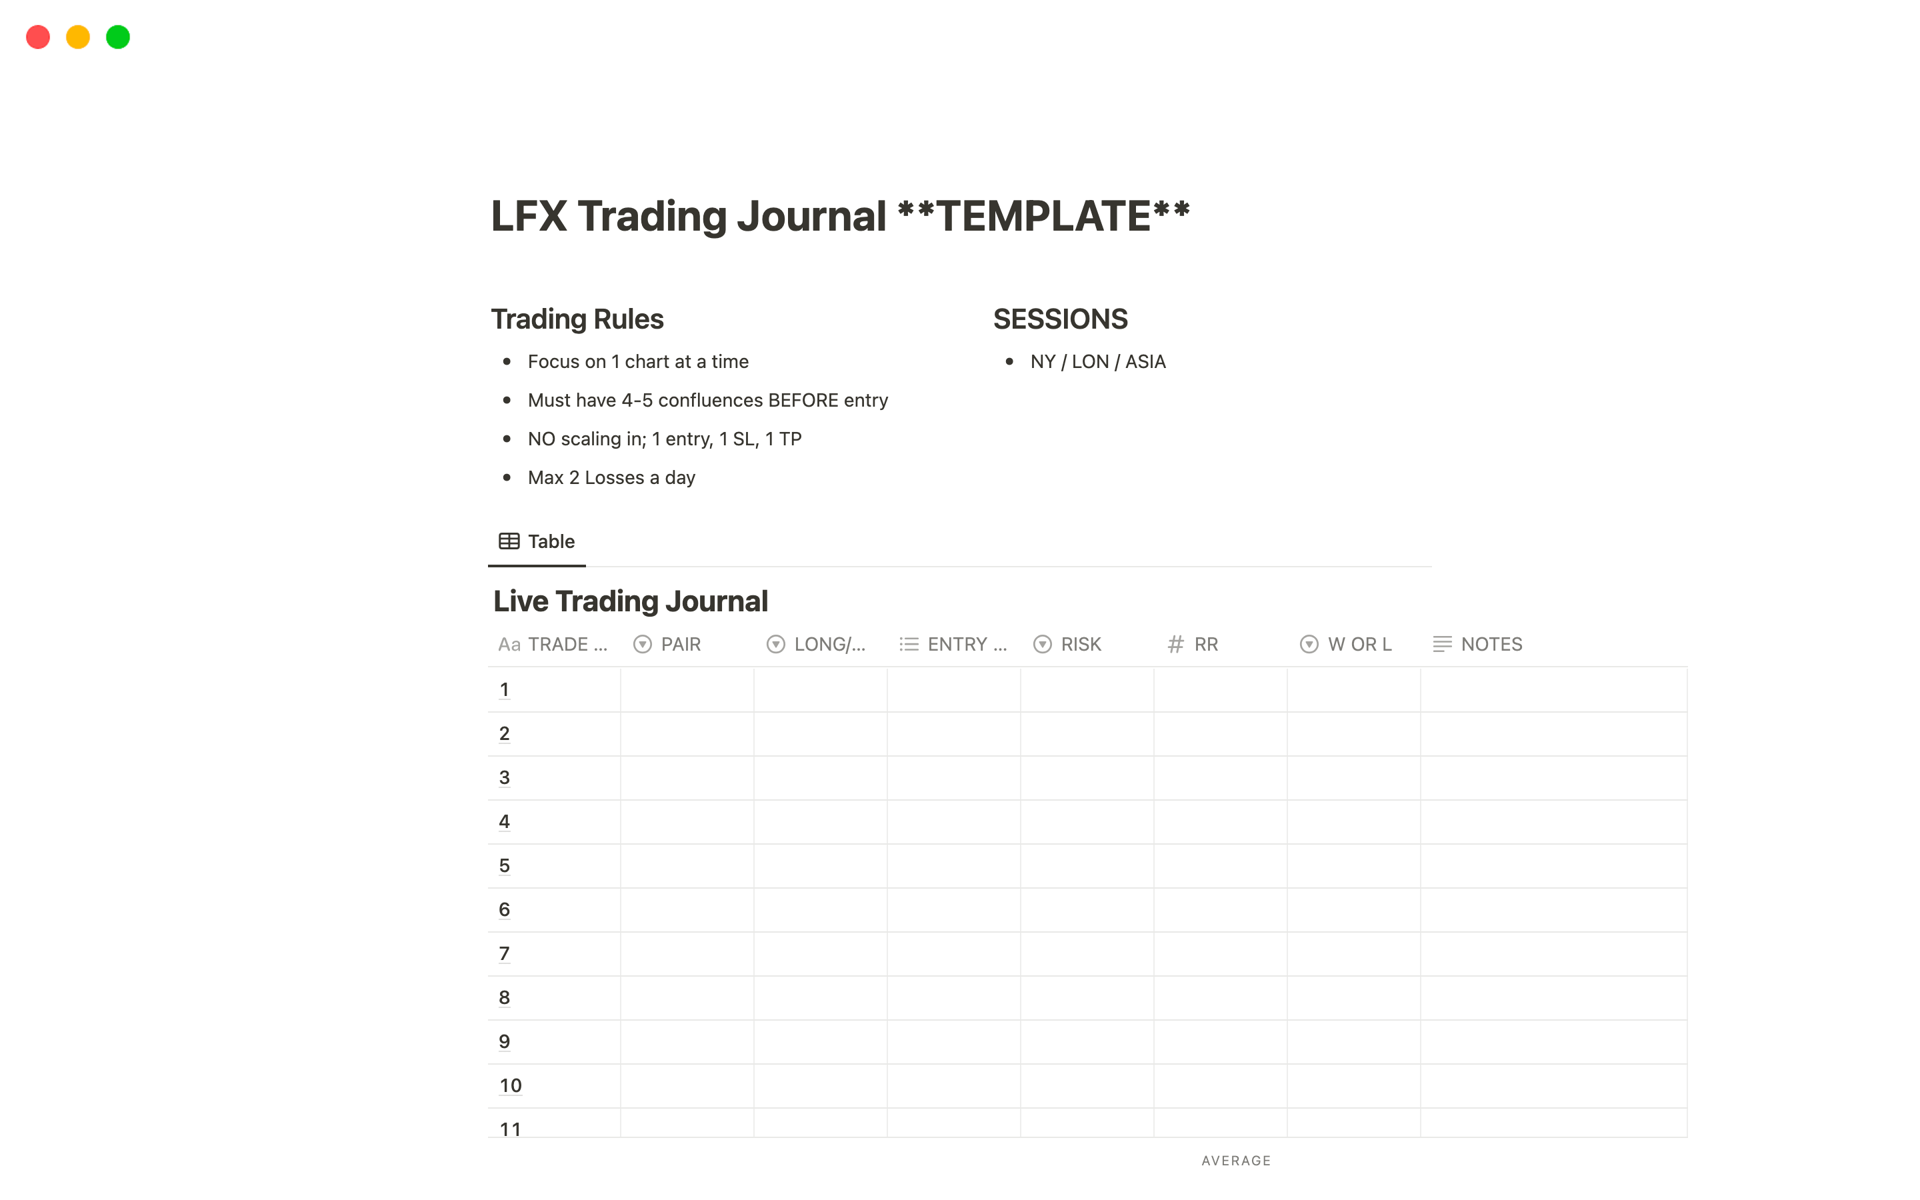 Vista previa de plantilla para LFX Trading Journal